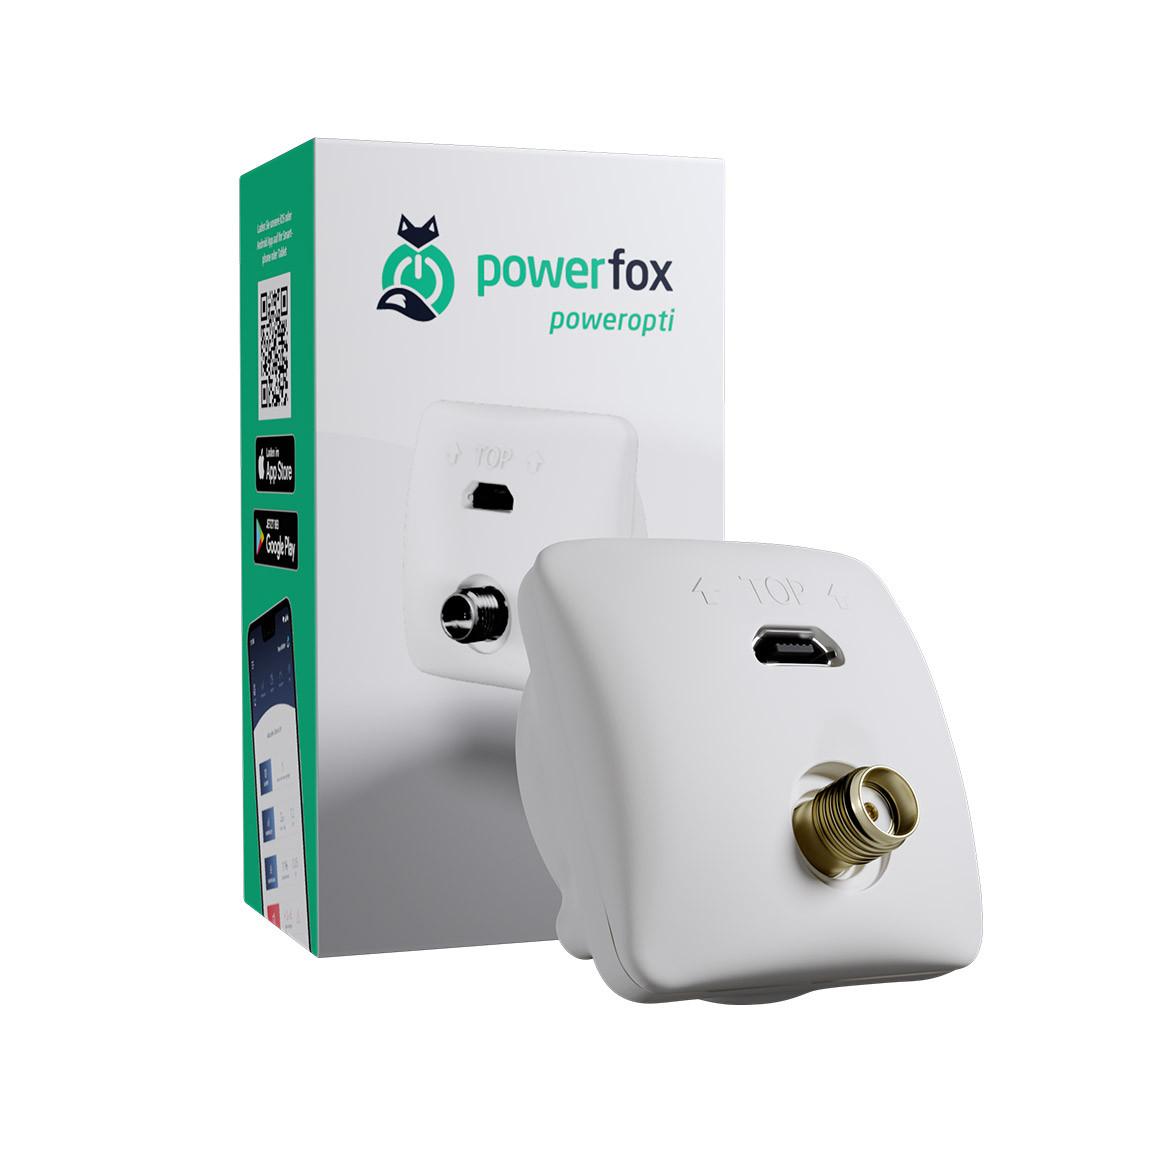 powerfox poweropti mit LED-Diode - Smarter Stromzähler_mit Verpackung